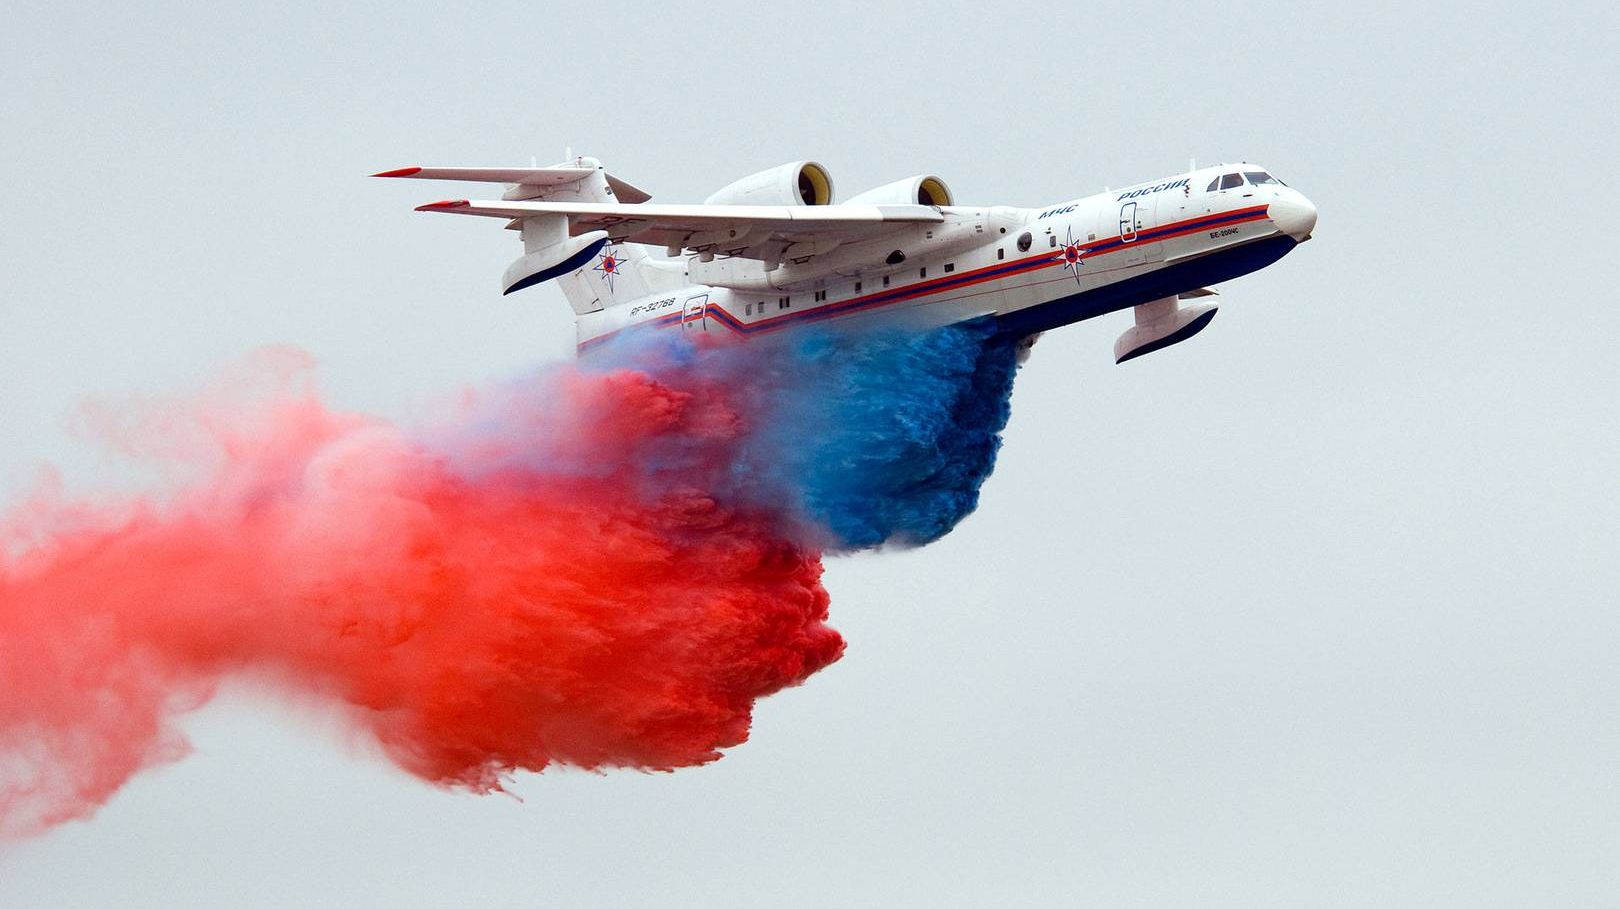 Бе-200ЧС выливает воду, окрашенную в цвета российского флага на МАКС-2009